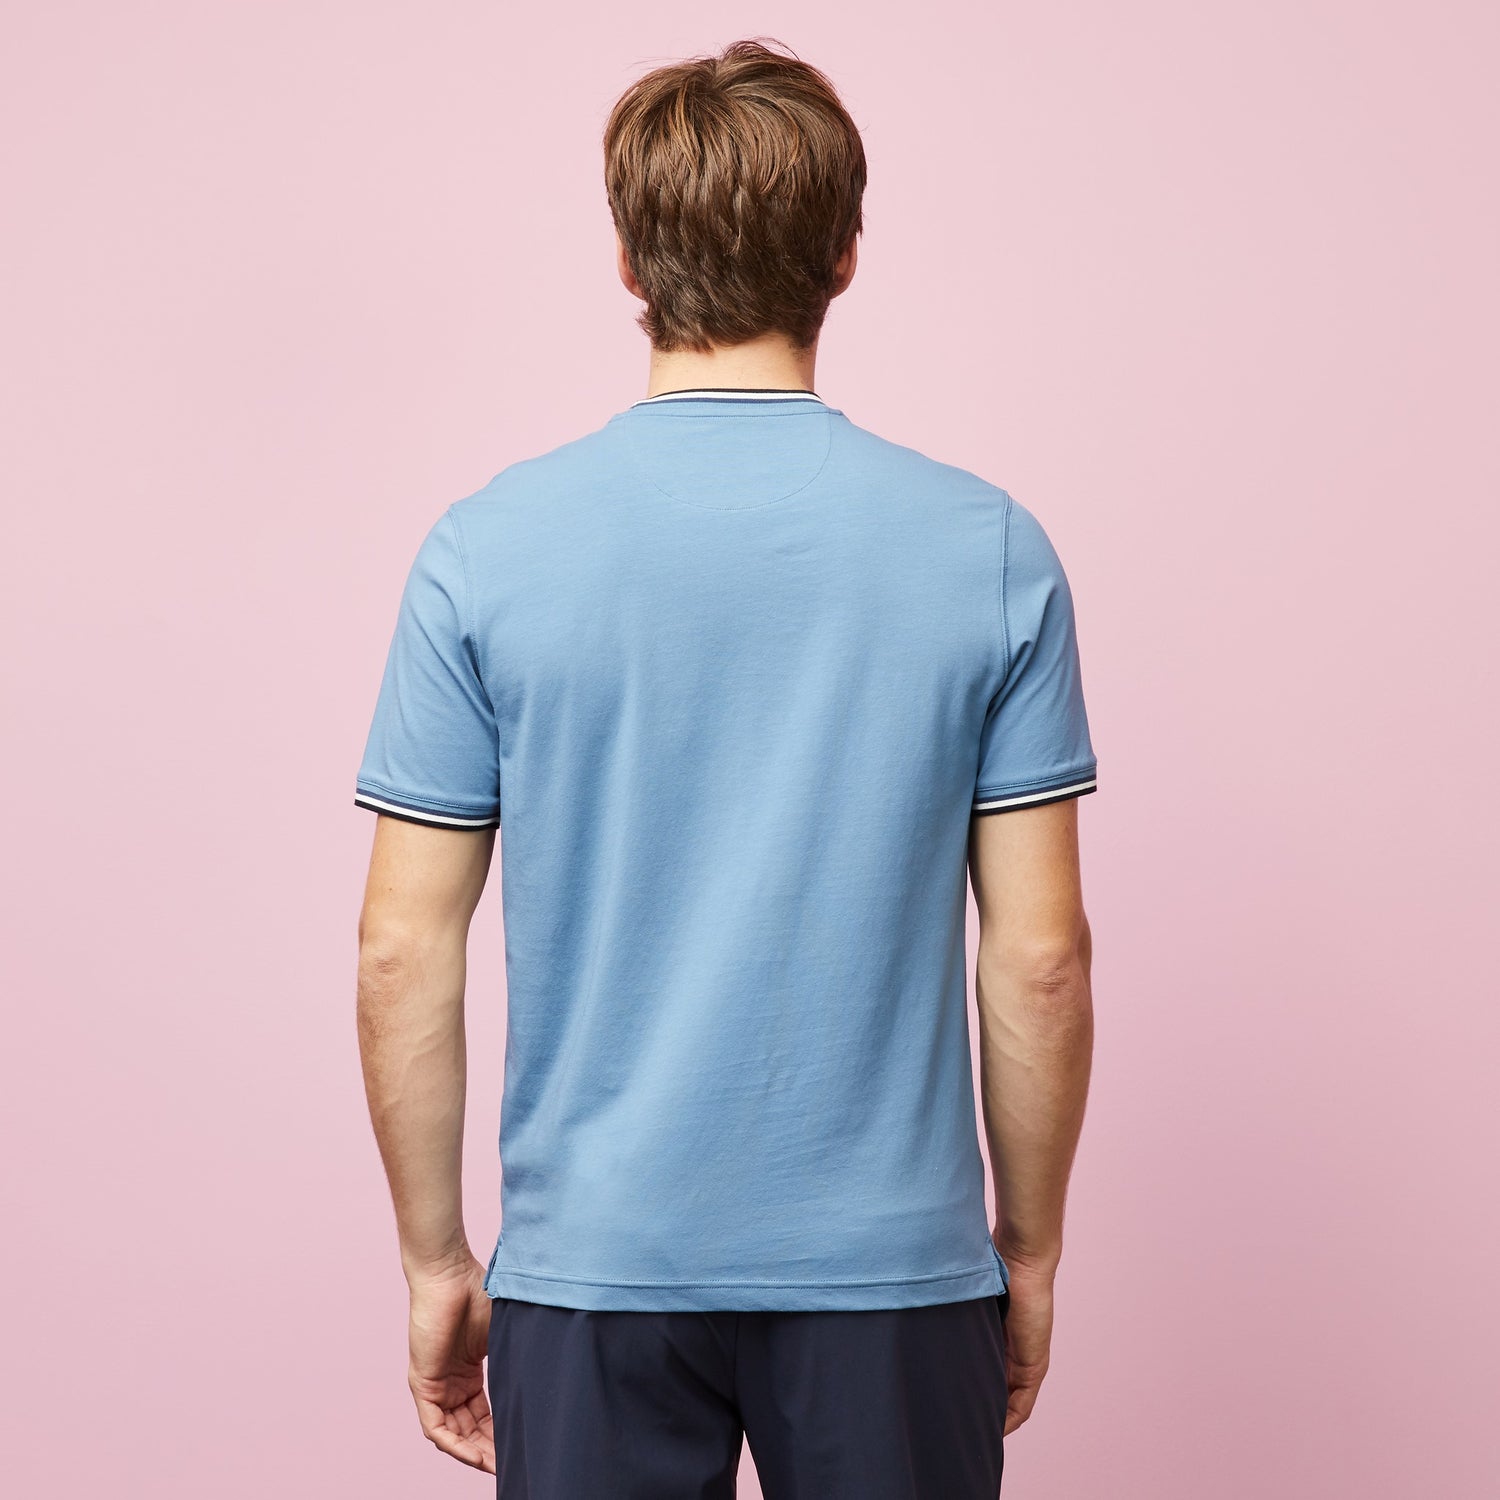 dark-blue-t-shirt-with-tricolour-trims_e23maitc0008_blf25_03